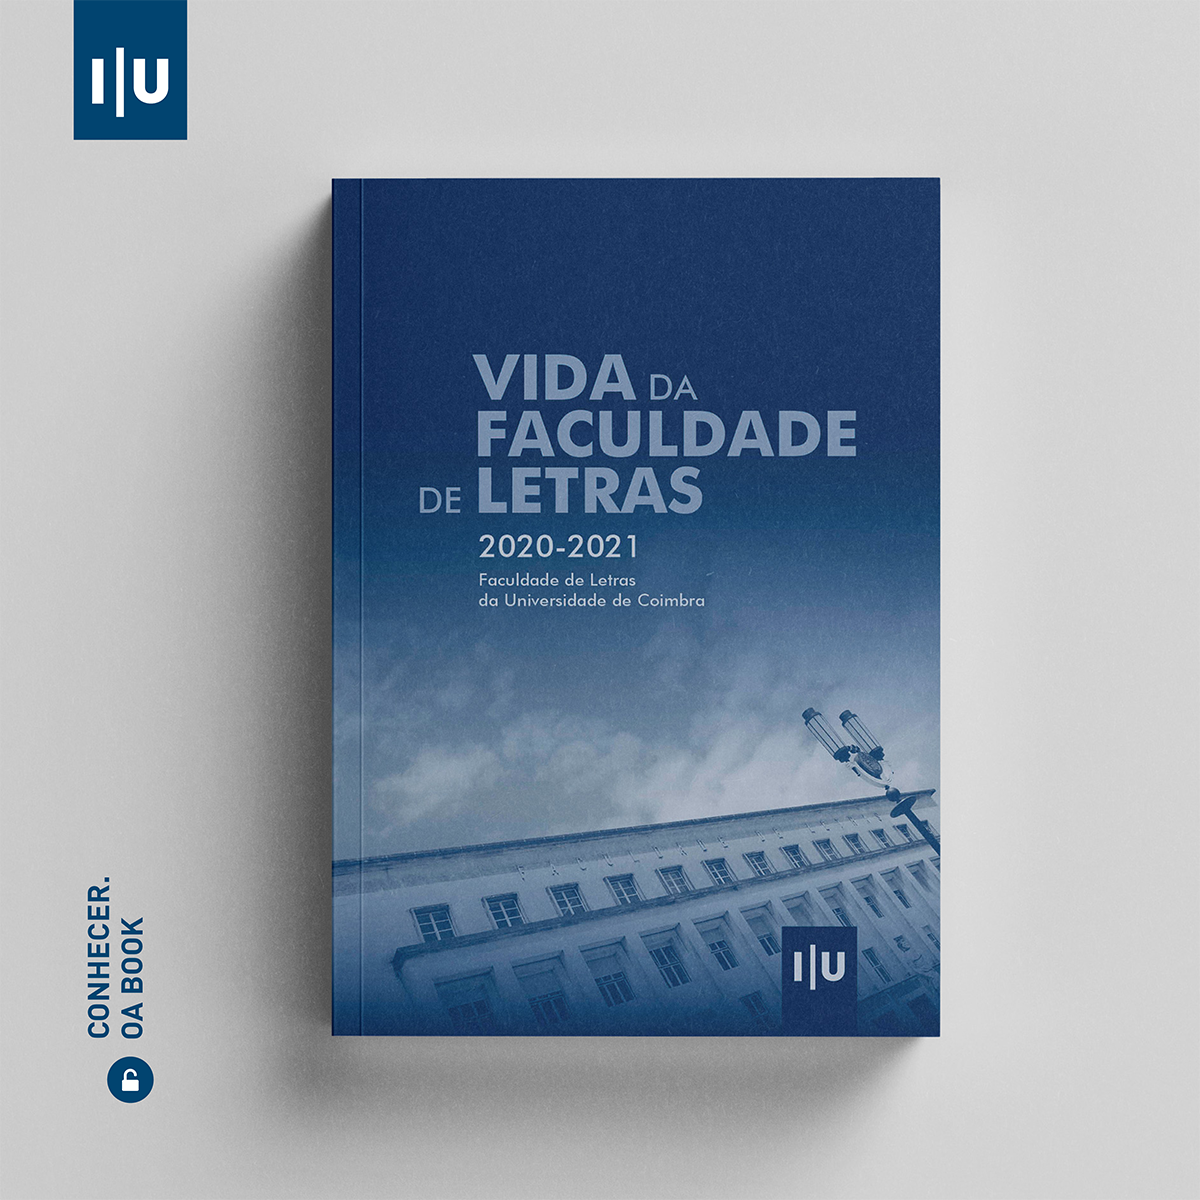 Read more about the article Vida da Faculdade de Letras 2020/2021